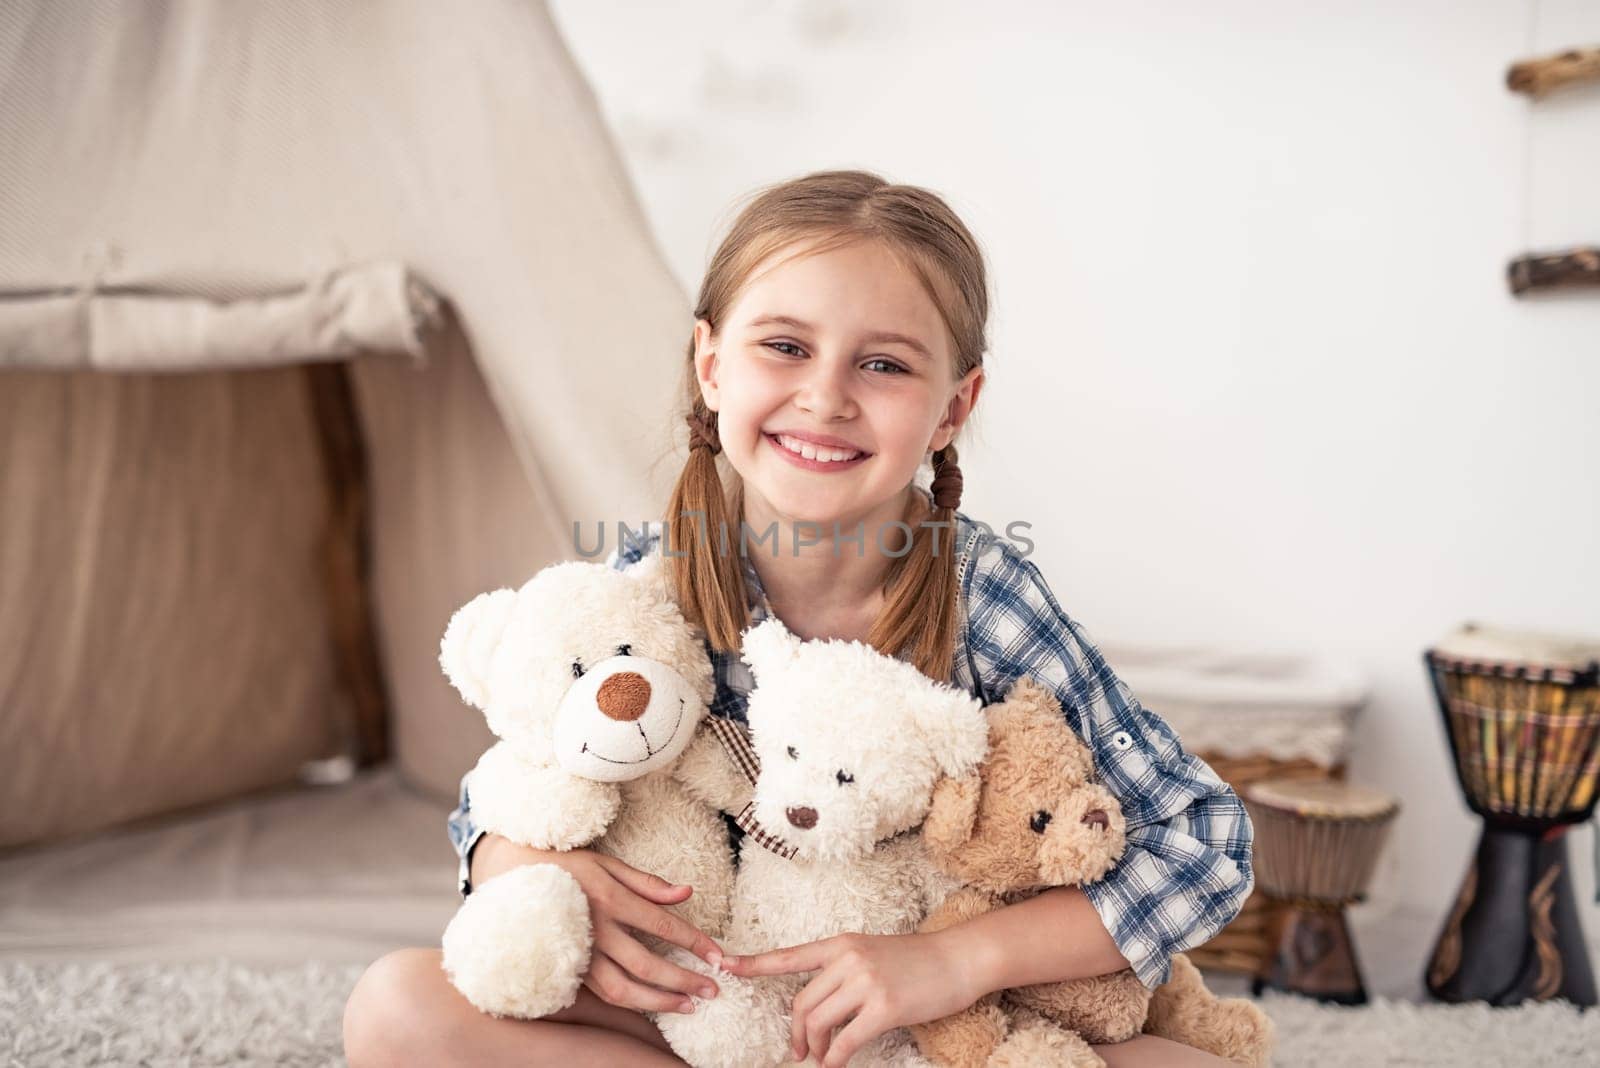 Little girl hugging plush teddies and smiling by GekaSkr